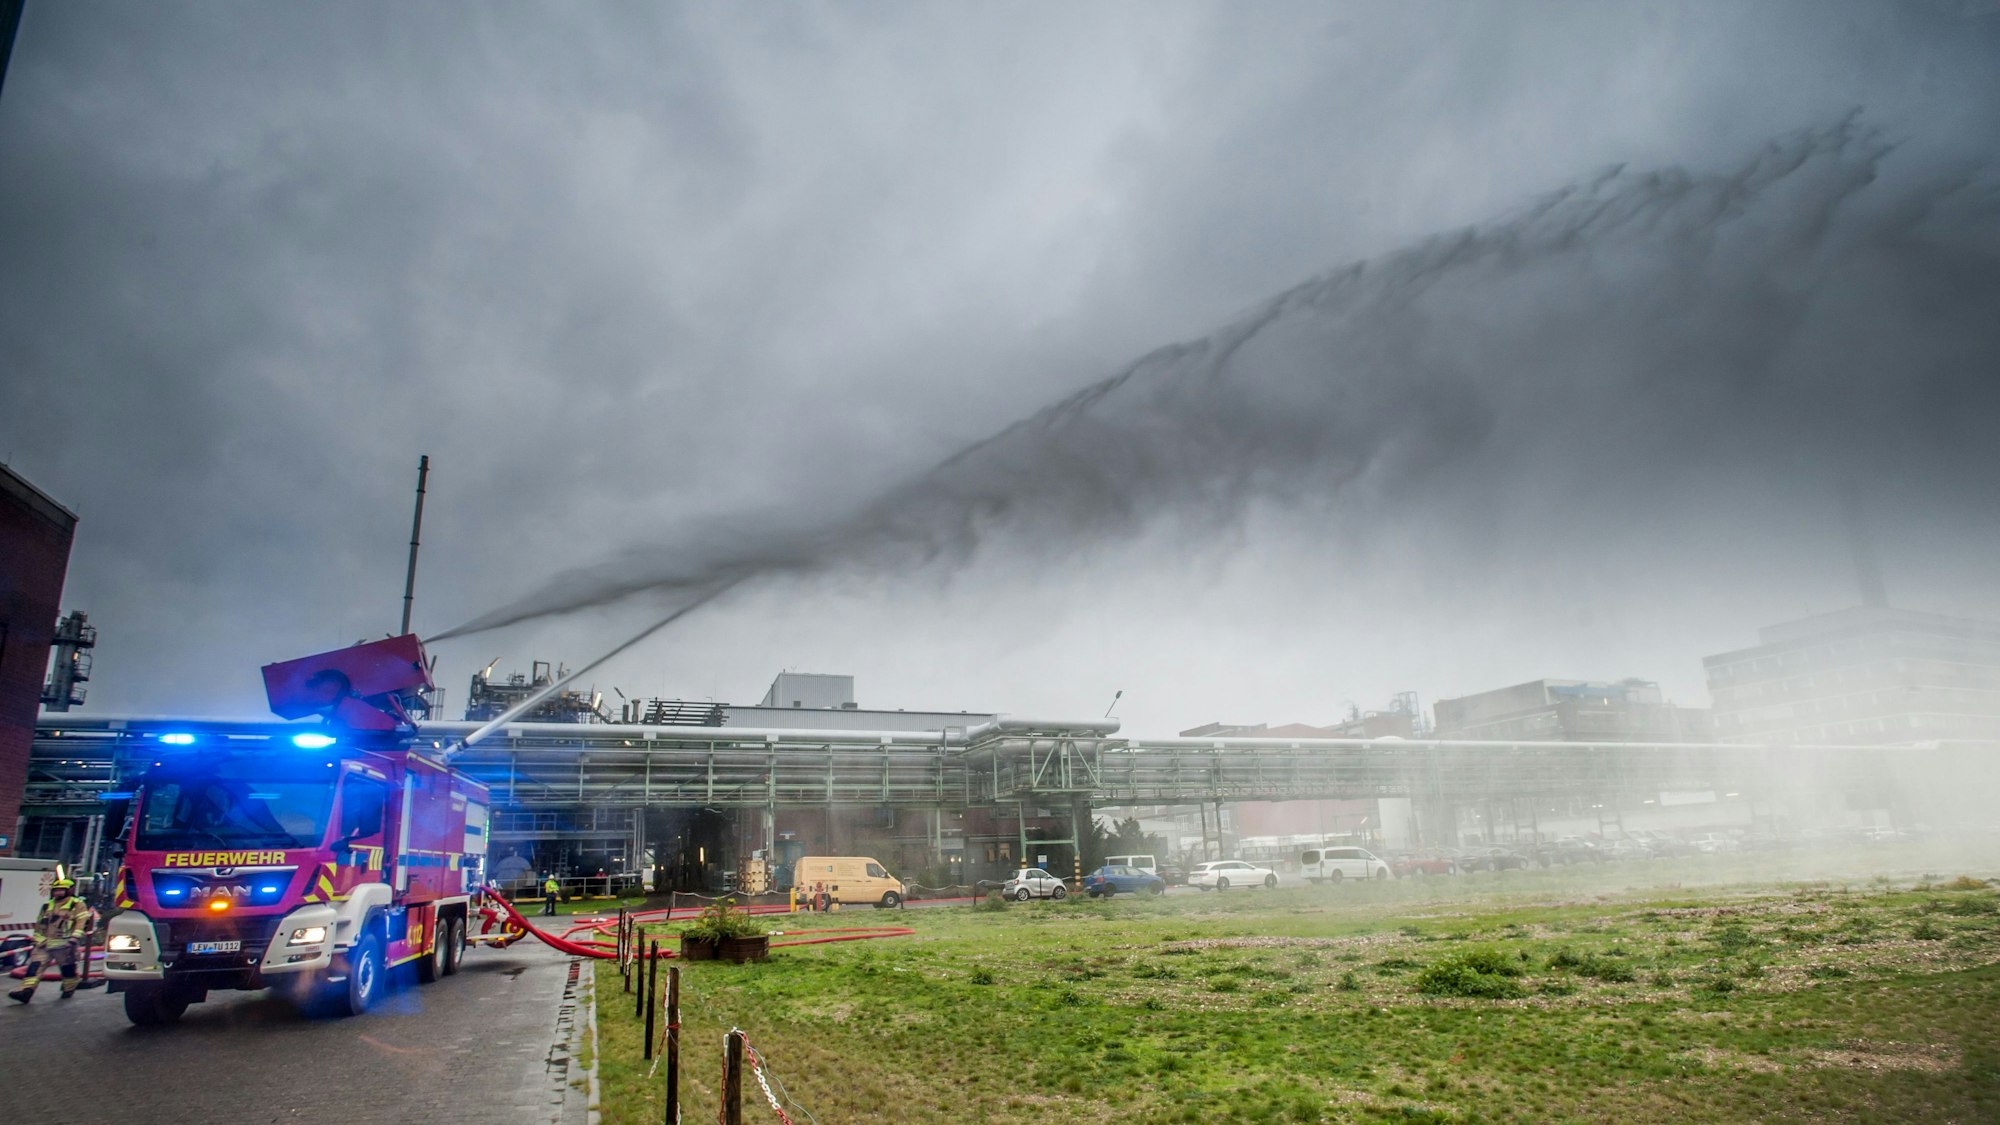 Currenta-Feuerwehrwagen mit Düsenkanone im Übungseinsatz